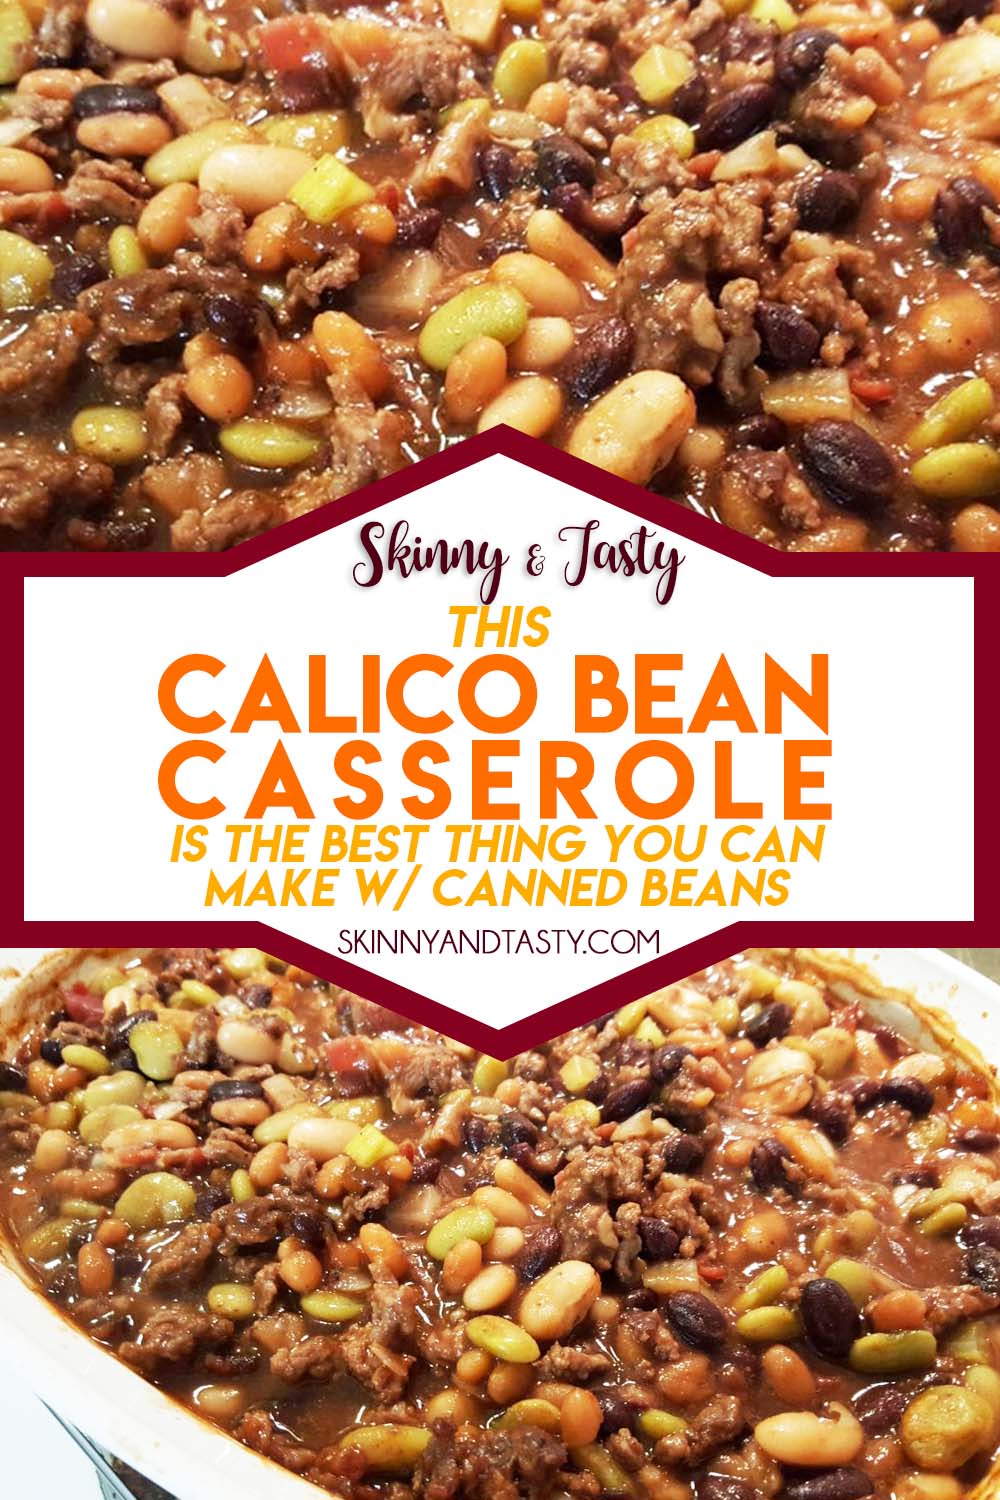 Calico Bean Casserole Recipe